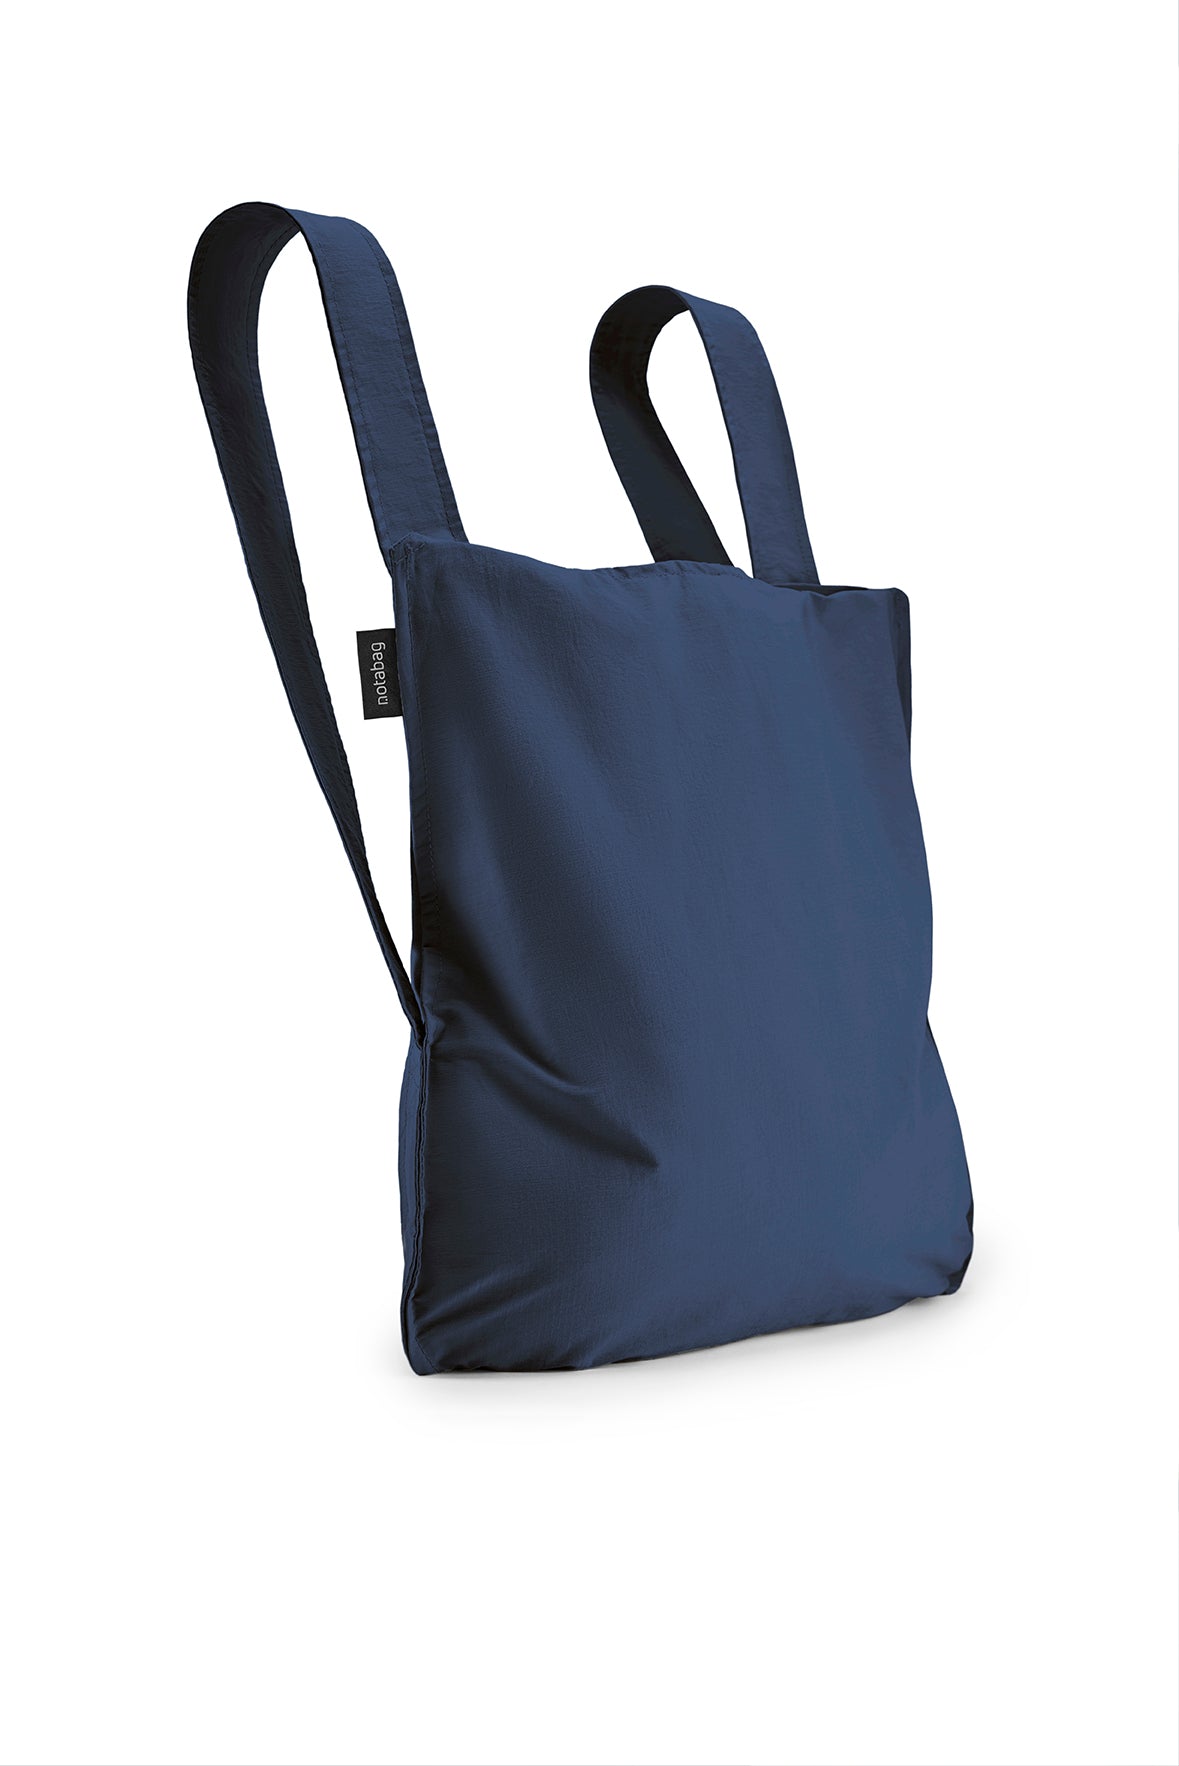 Notabag - Sac à dos et sac à main - bleu marine